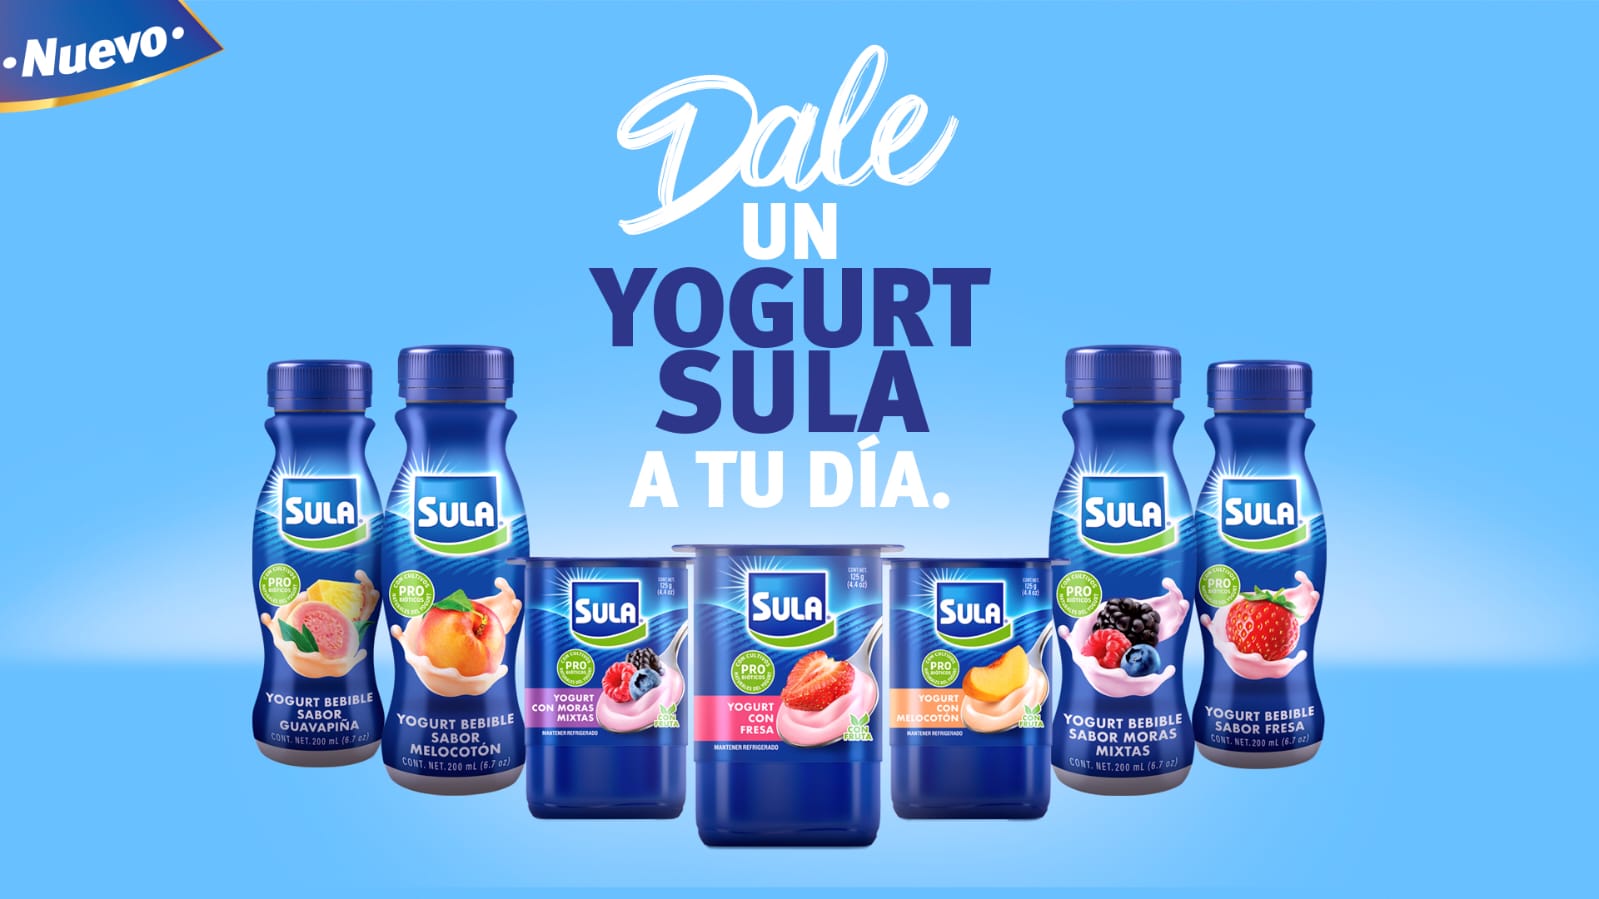 Nuevo Yogurt Sula: nutritivo, ligero y delicioso